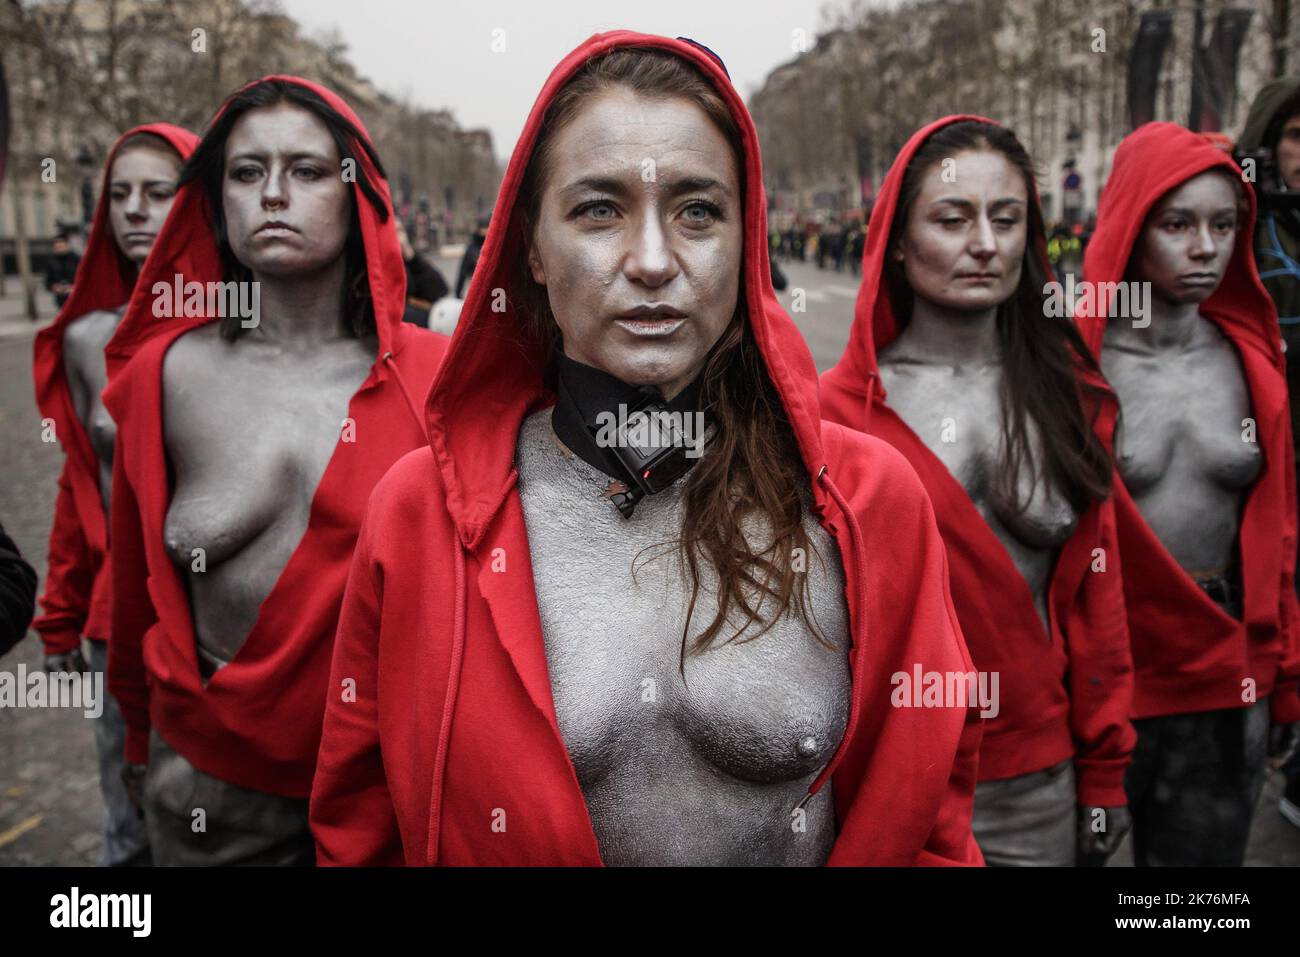 Frauen, die als „Marianne“, das nationale Symbol der Französischen Republik, gekleidet sind, sehen sich am 15. Dezember 2018 auf der Champs Elysees in Paris französischen Gendarmen gegenüber, während sie an einer Demonstration teilnehmen, die von der „Gilets Jaunes“ („Gelbe Weste‚Äô) genannt wird. Um gegen steigende Lebenshaltungskosten zu protestieren, machen sie hohe Steuern verantwortlich. Die sogenannten "Gilets Jaunes" (Gelbwesten) sind eine Protestbewegung, die angeblich keine politische Zugehörigkeit hat, die landesweit die Proteste über hohe Kraftstoffpreise fortsetzt. Stockfoto